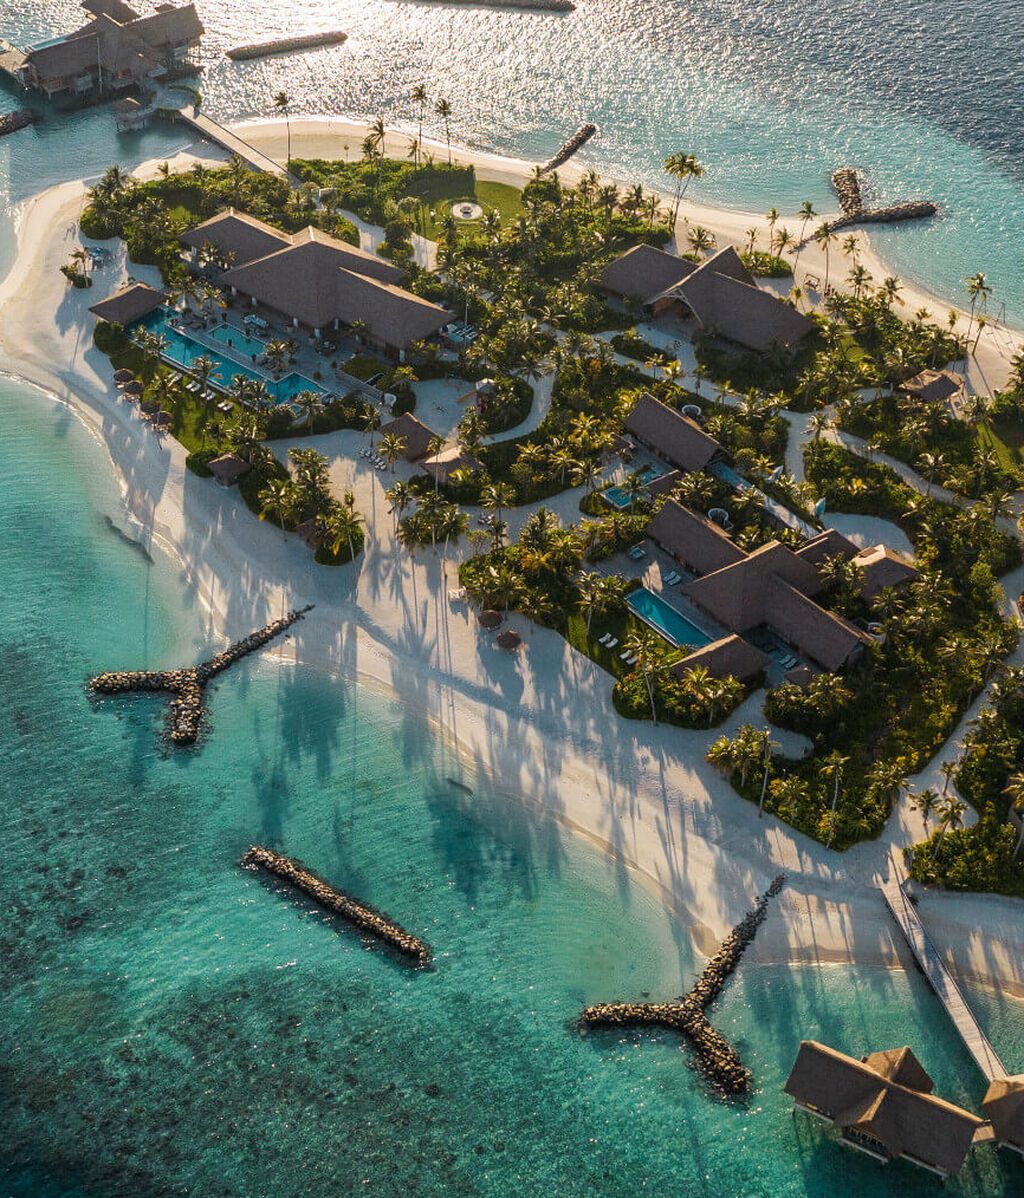 Vacaciones de lujo en las Maldivas: alquilar una isla privada por 80.000 dólares la noche